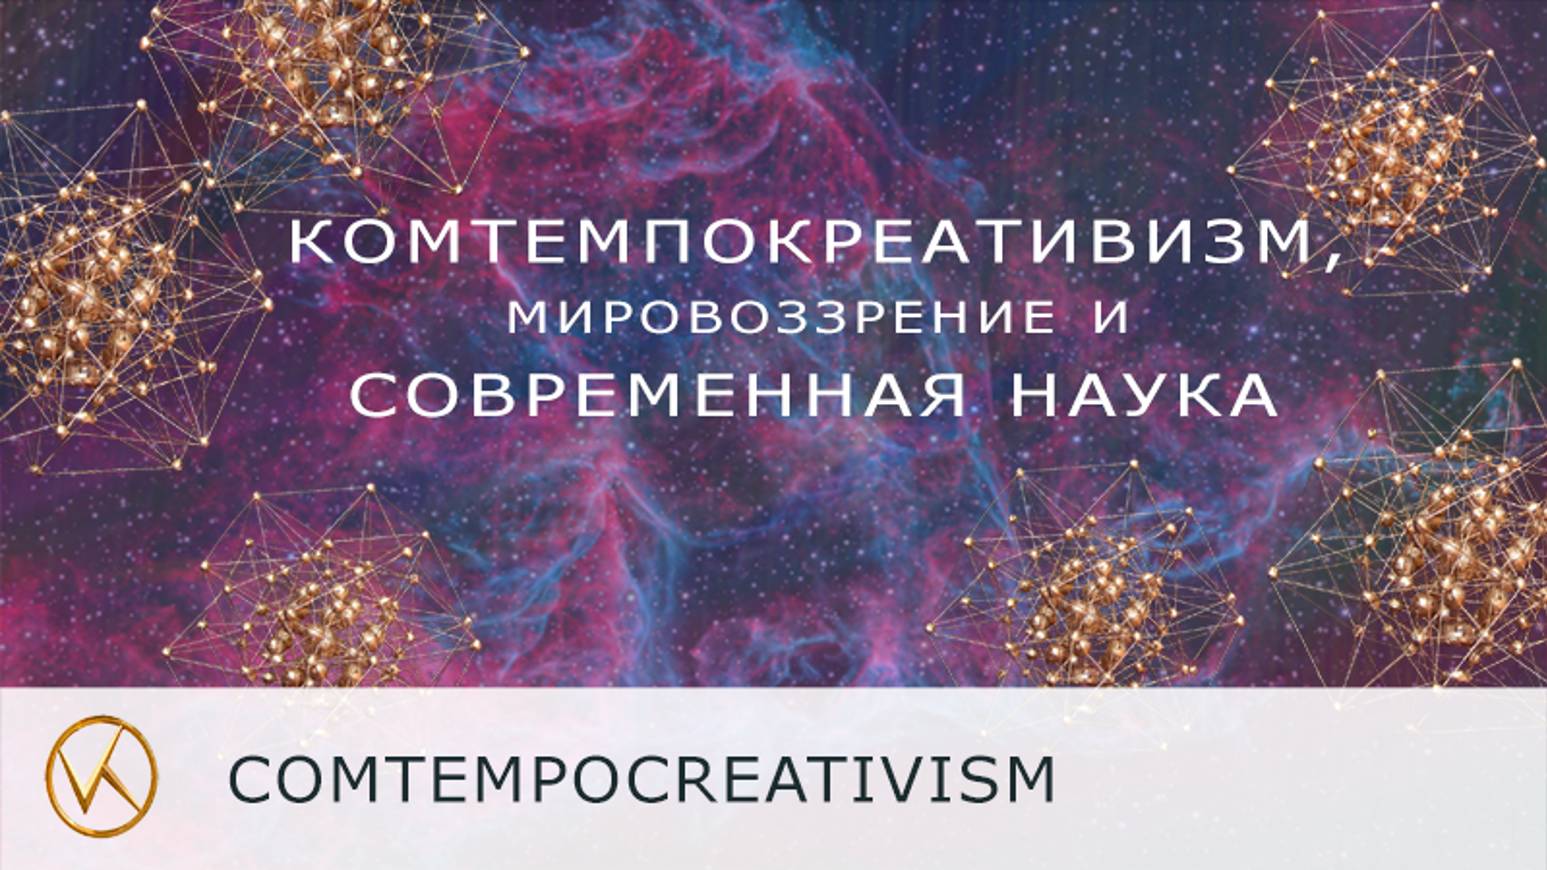 Комтемпокреативизм, Высший Космос, мировоззрение и современная наука